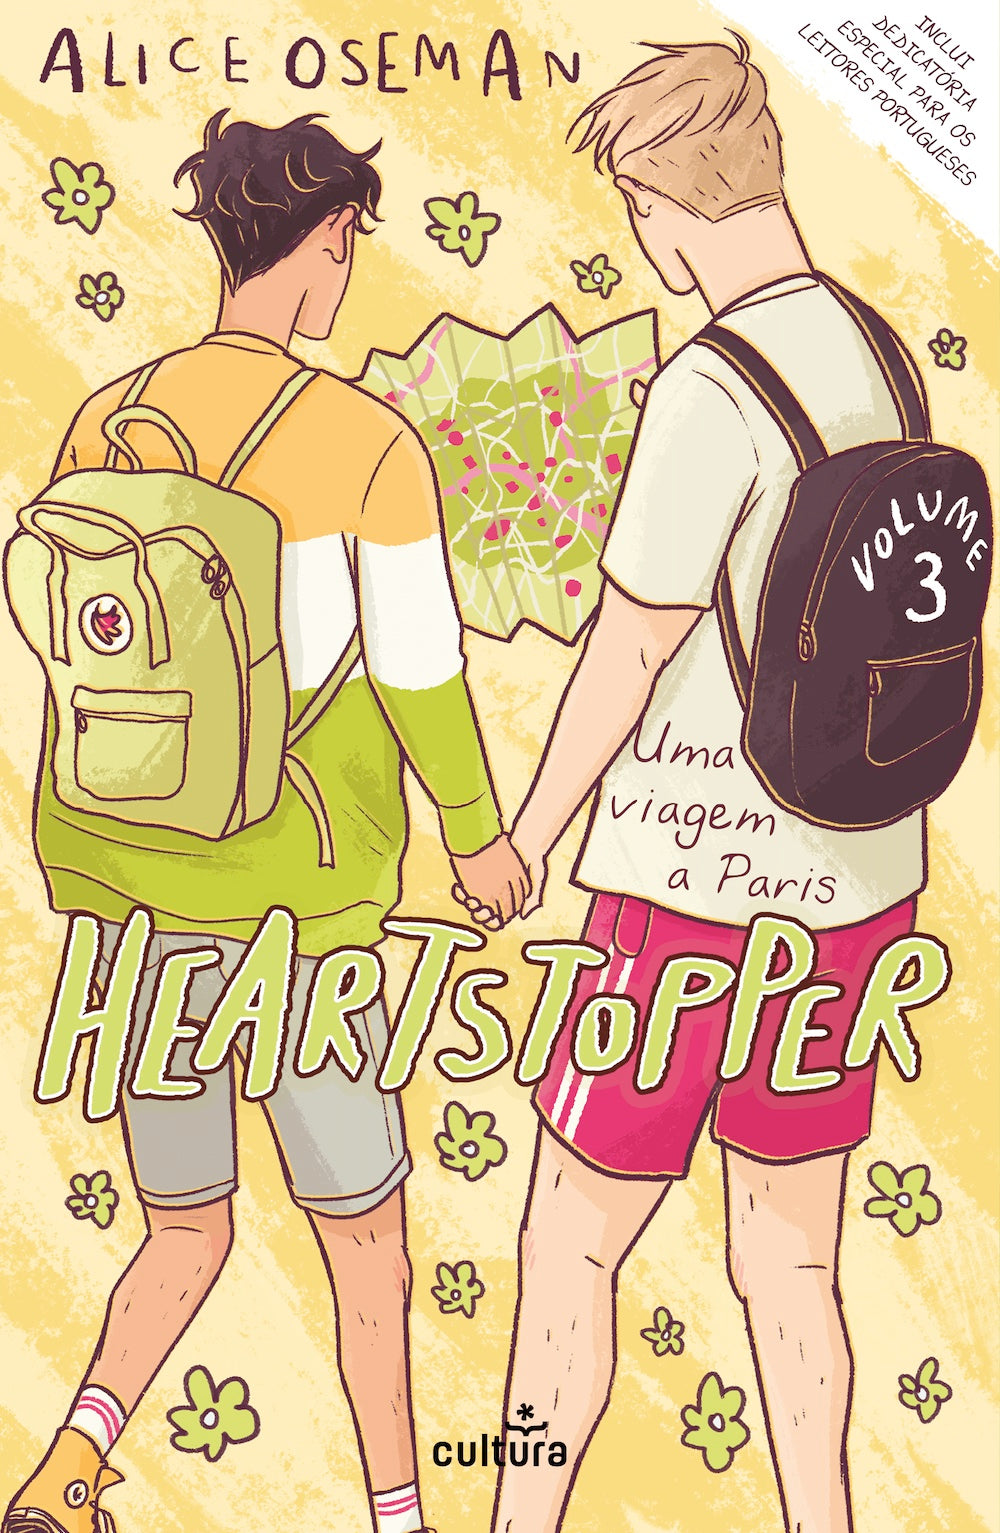 Heartstopper — Volume 3 — Uma Viagem a Paris